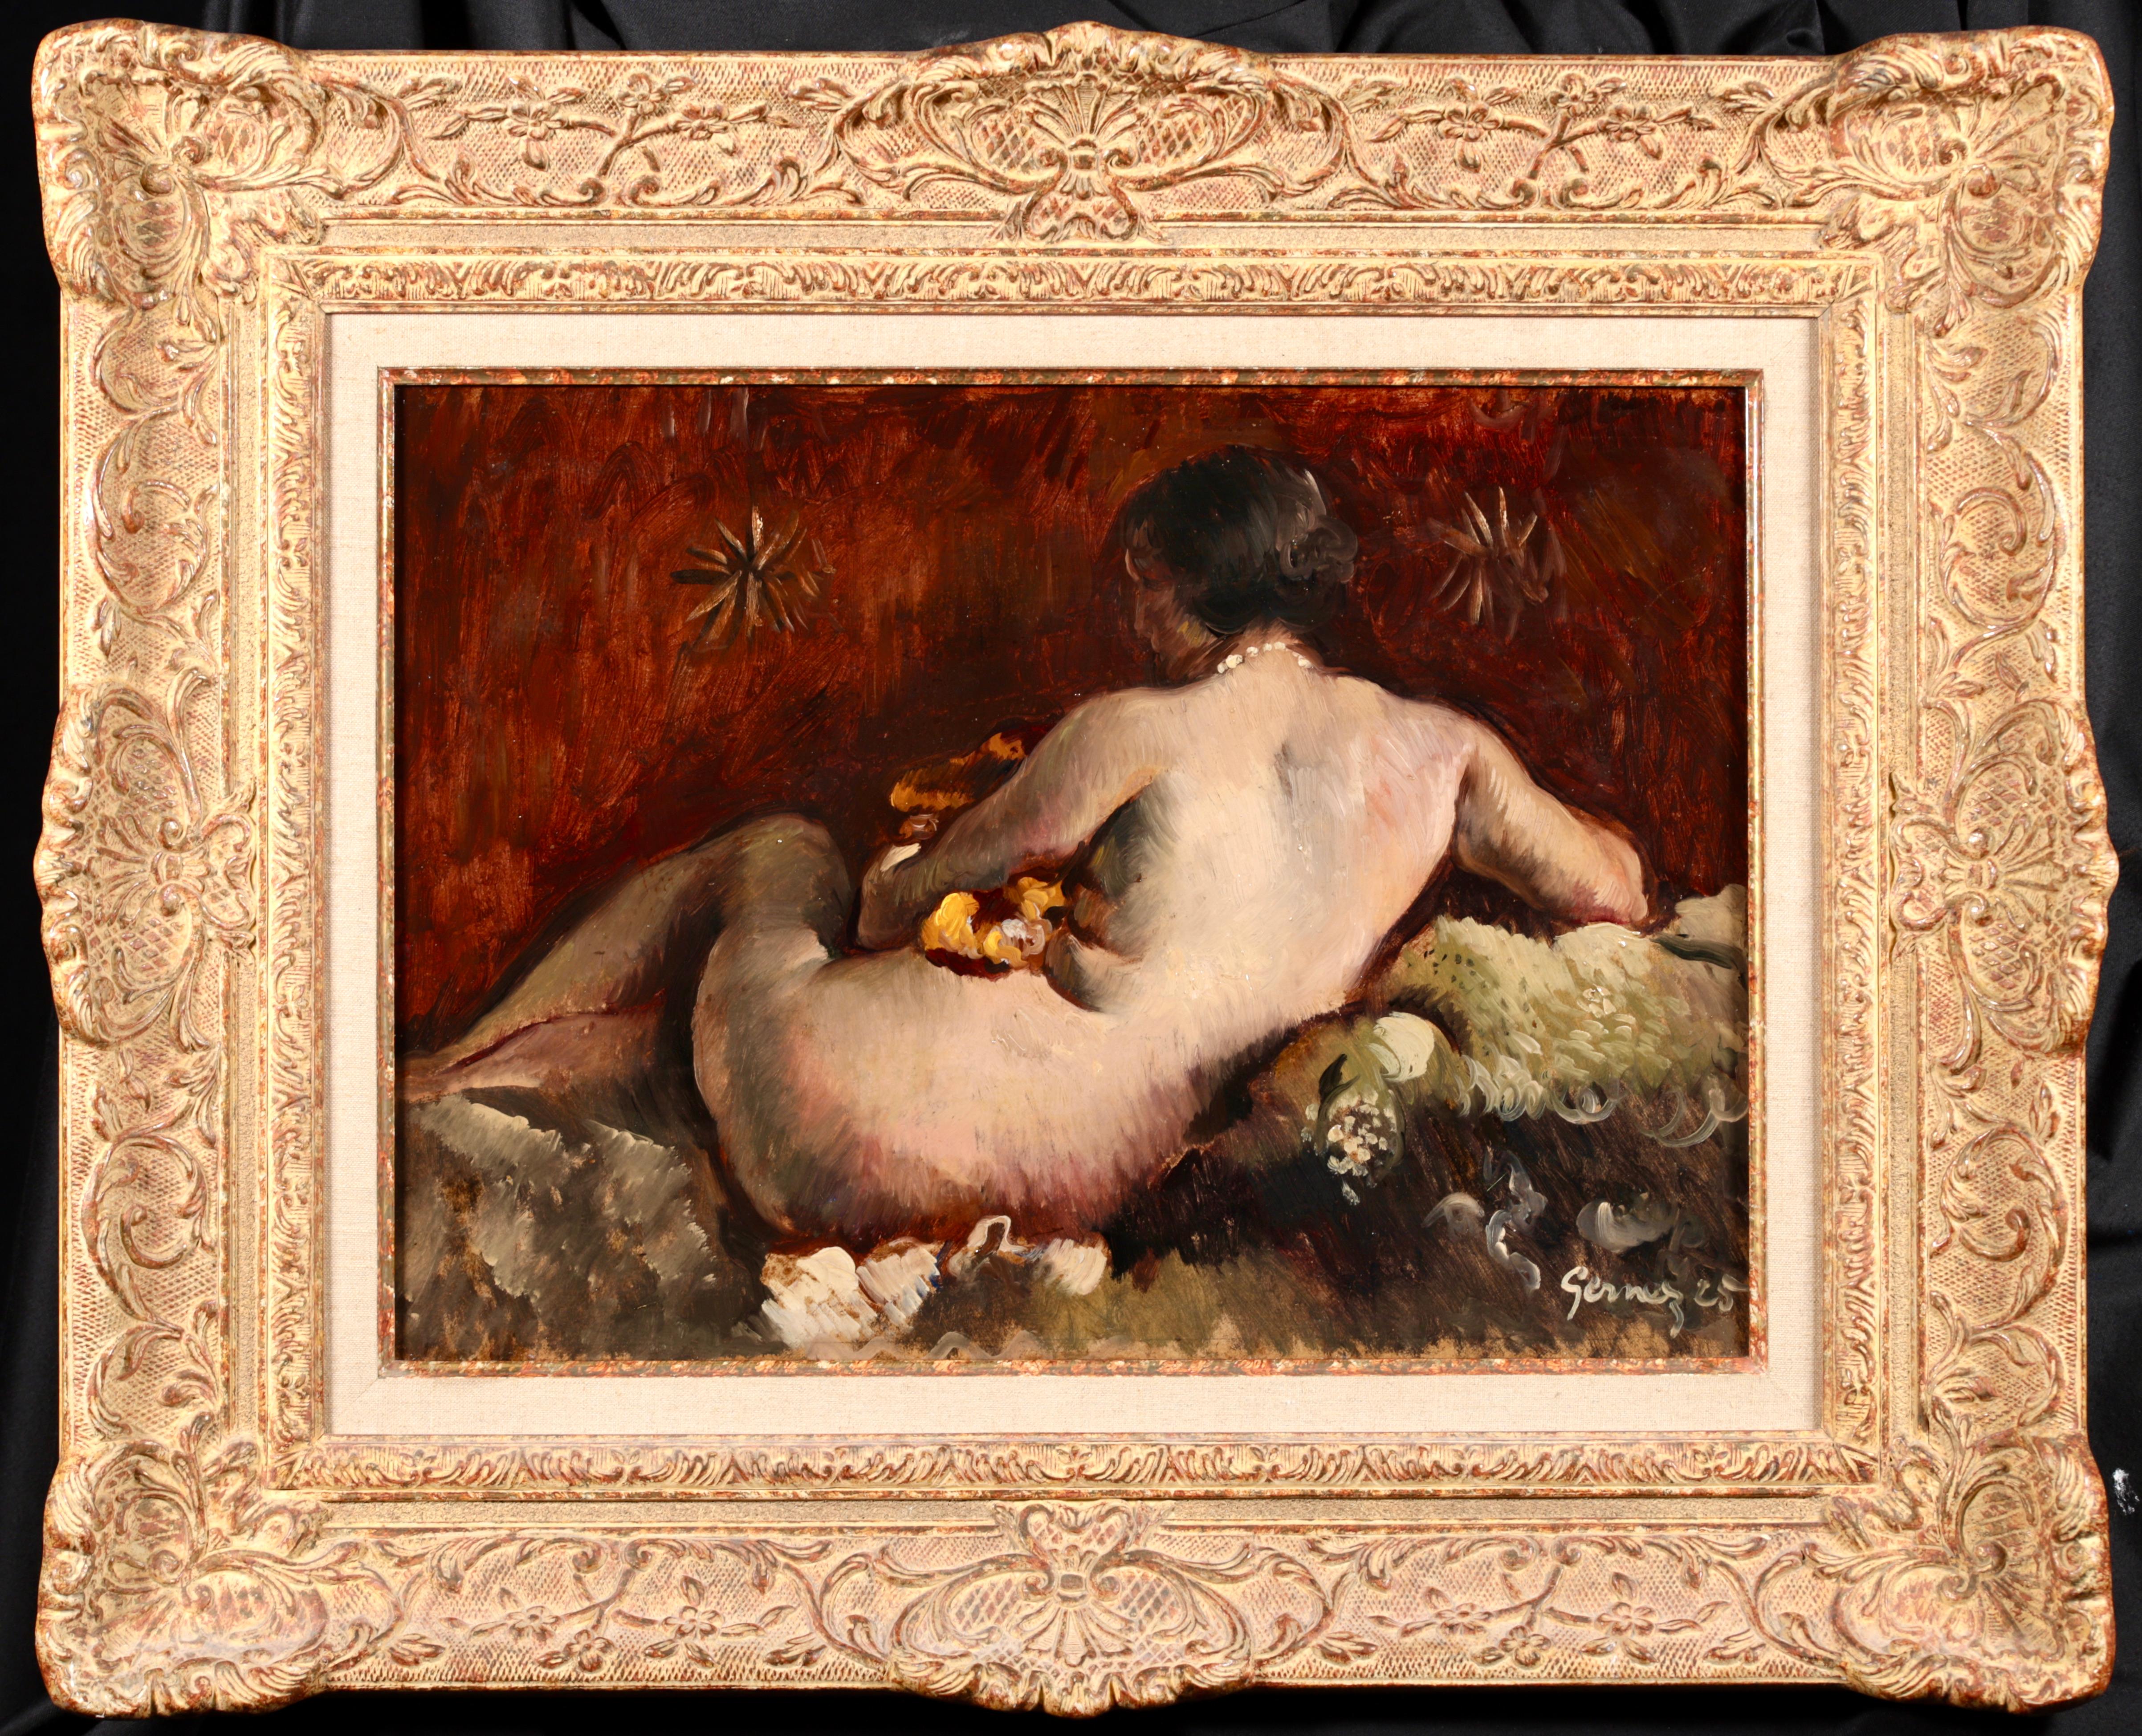 Signiert und datiert Akt Öl auf Platte von Französisch Post impressionistischen Maler Paul Elie Gernez. Das Werk zeigt einen brünetten Akt, der sich auf einem Fellteppich ausruht, wobei sich ihre blasse Haut von dem tiefen Rot der Wand hinter ihr